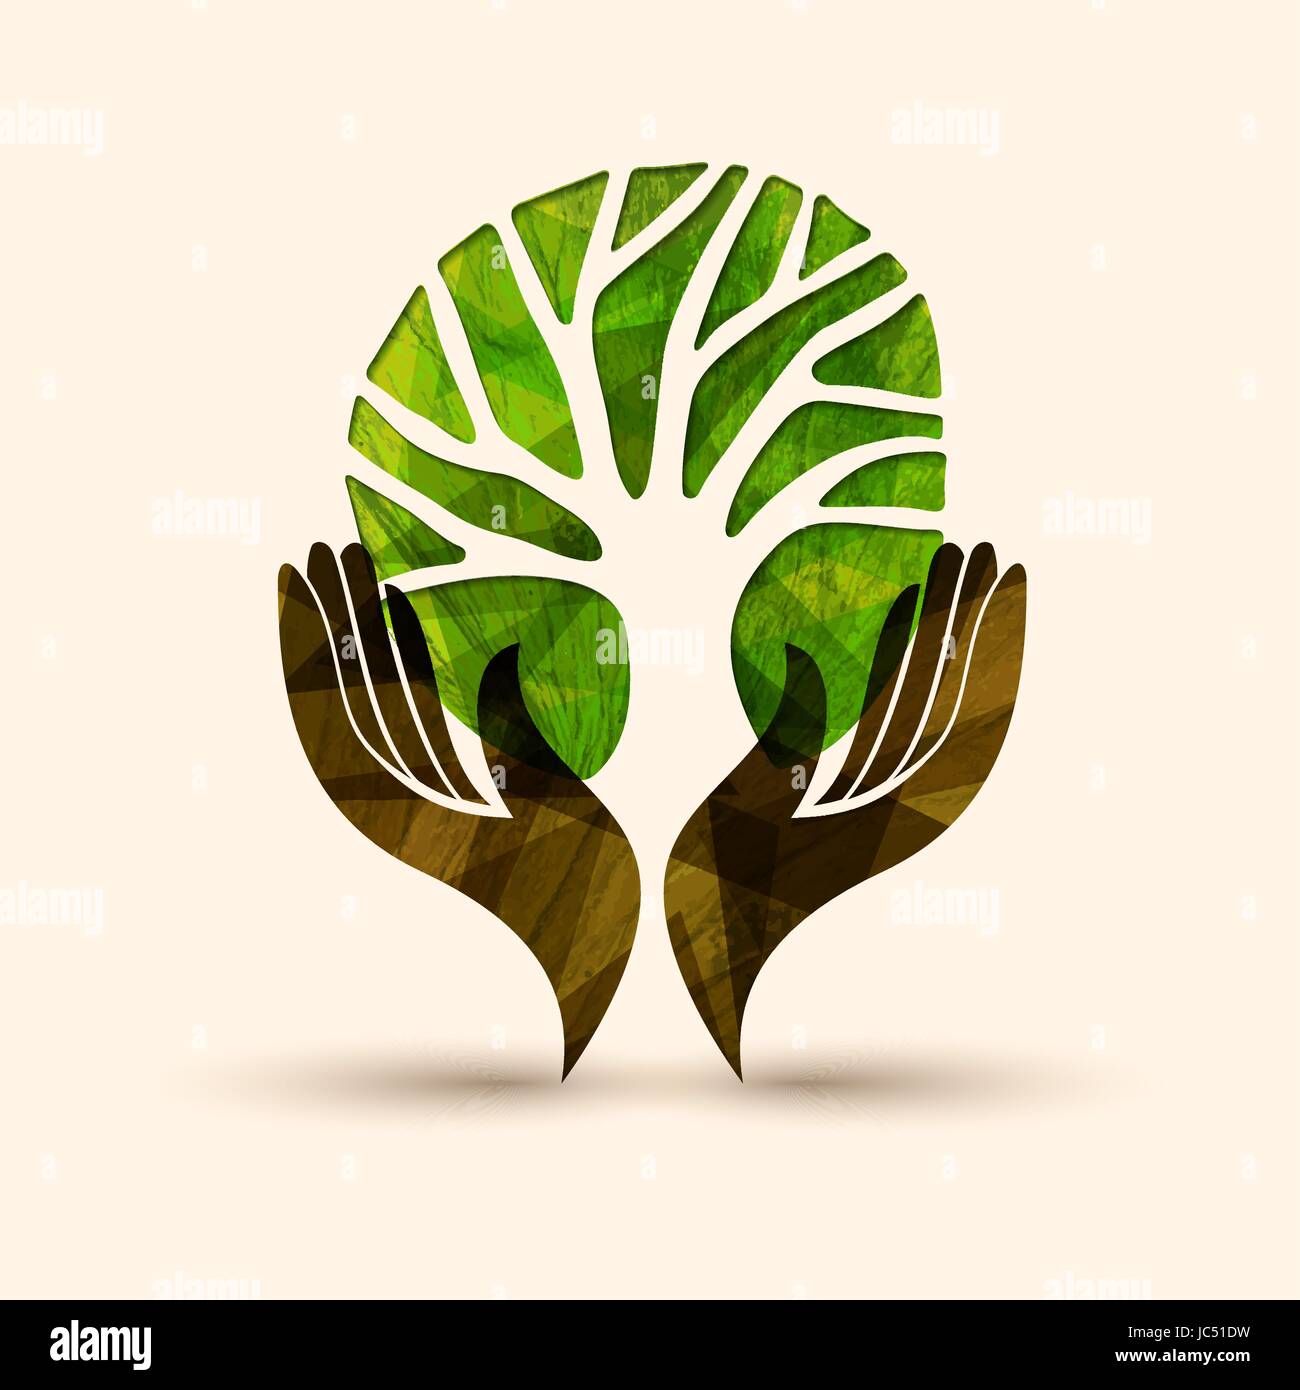 Menschliche Hände halten grüner Baum-Symbol mit Natur-Textur. Konzept-Illustration für Umweltprojekt Betreuung oder Hilfe. EPS10 Vektor. Stock Vektor